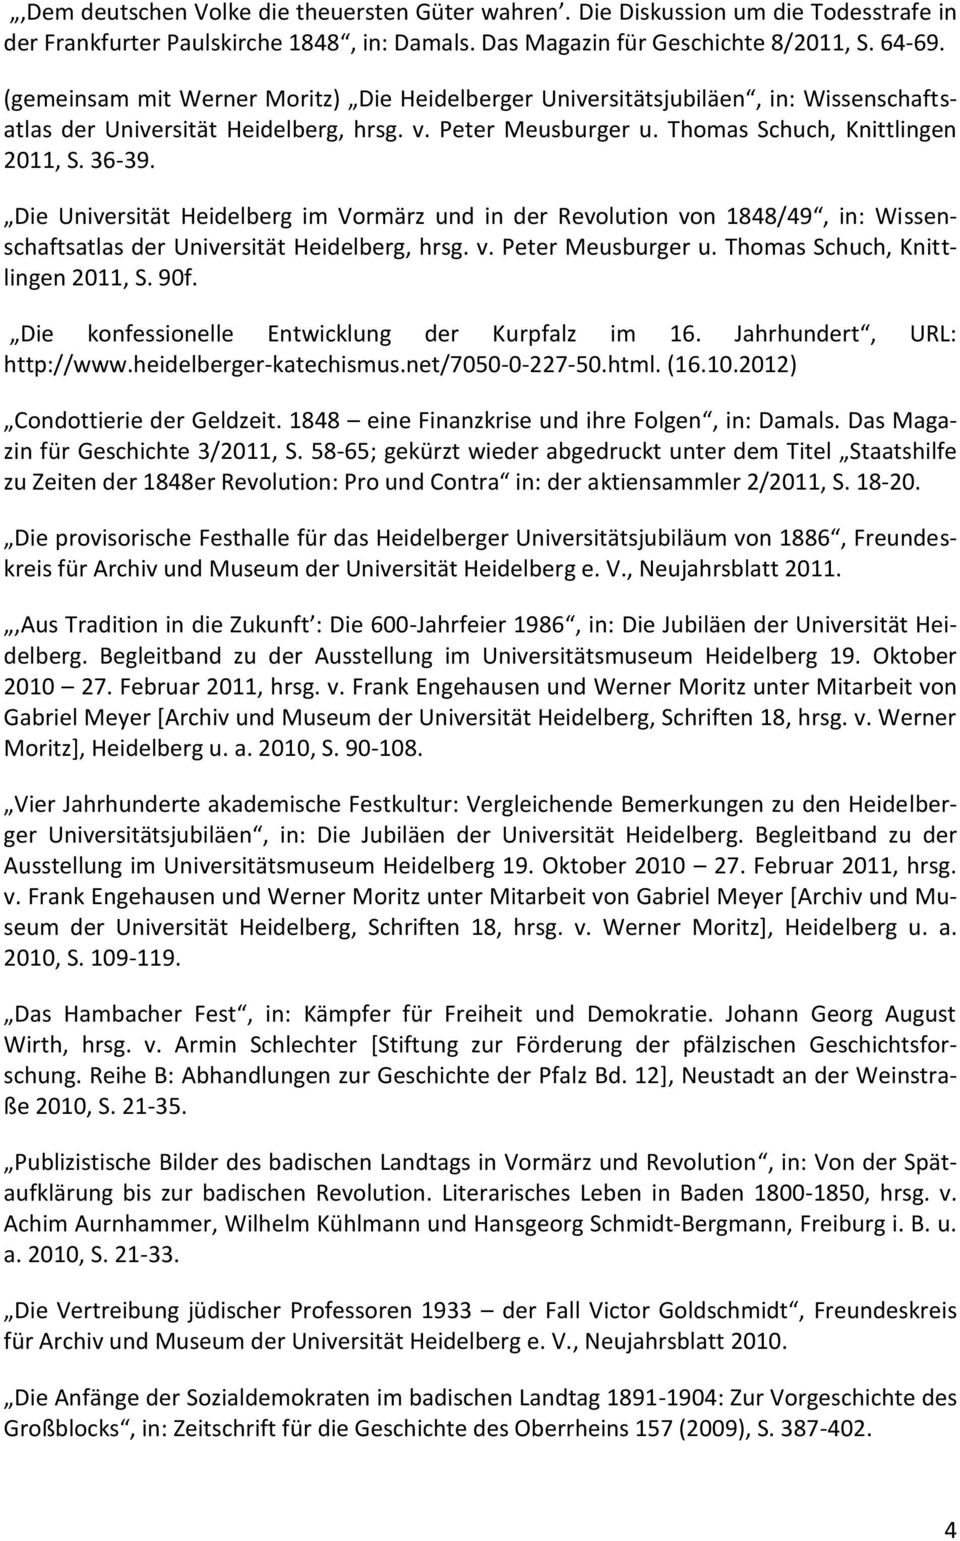 Die Universität Heidelberg im Vormärz und in der Revolution von 1848/49, in: Wissenschaftsatlas der Universität Heidelberg, hrsg. v. Peter Meusburger u. Thomas Schuch, Knittlingen 2011, S. 90f.